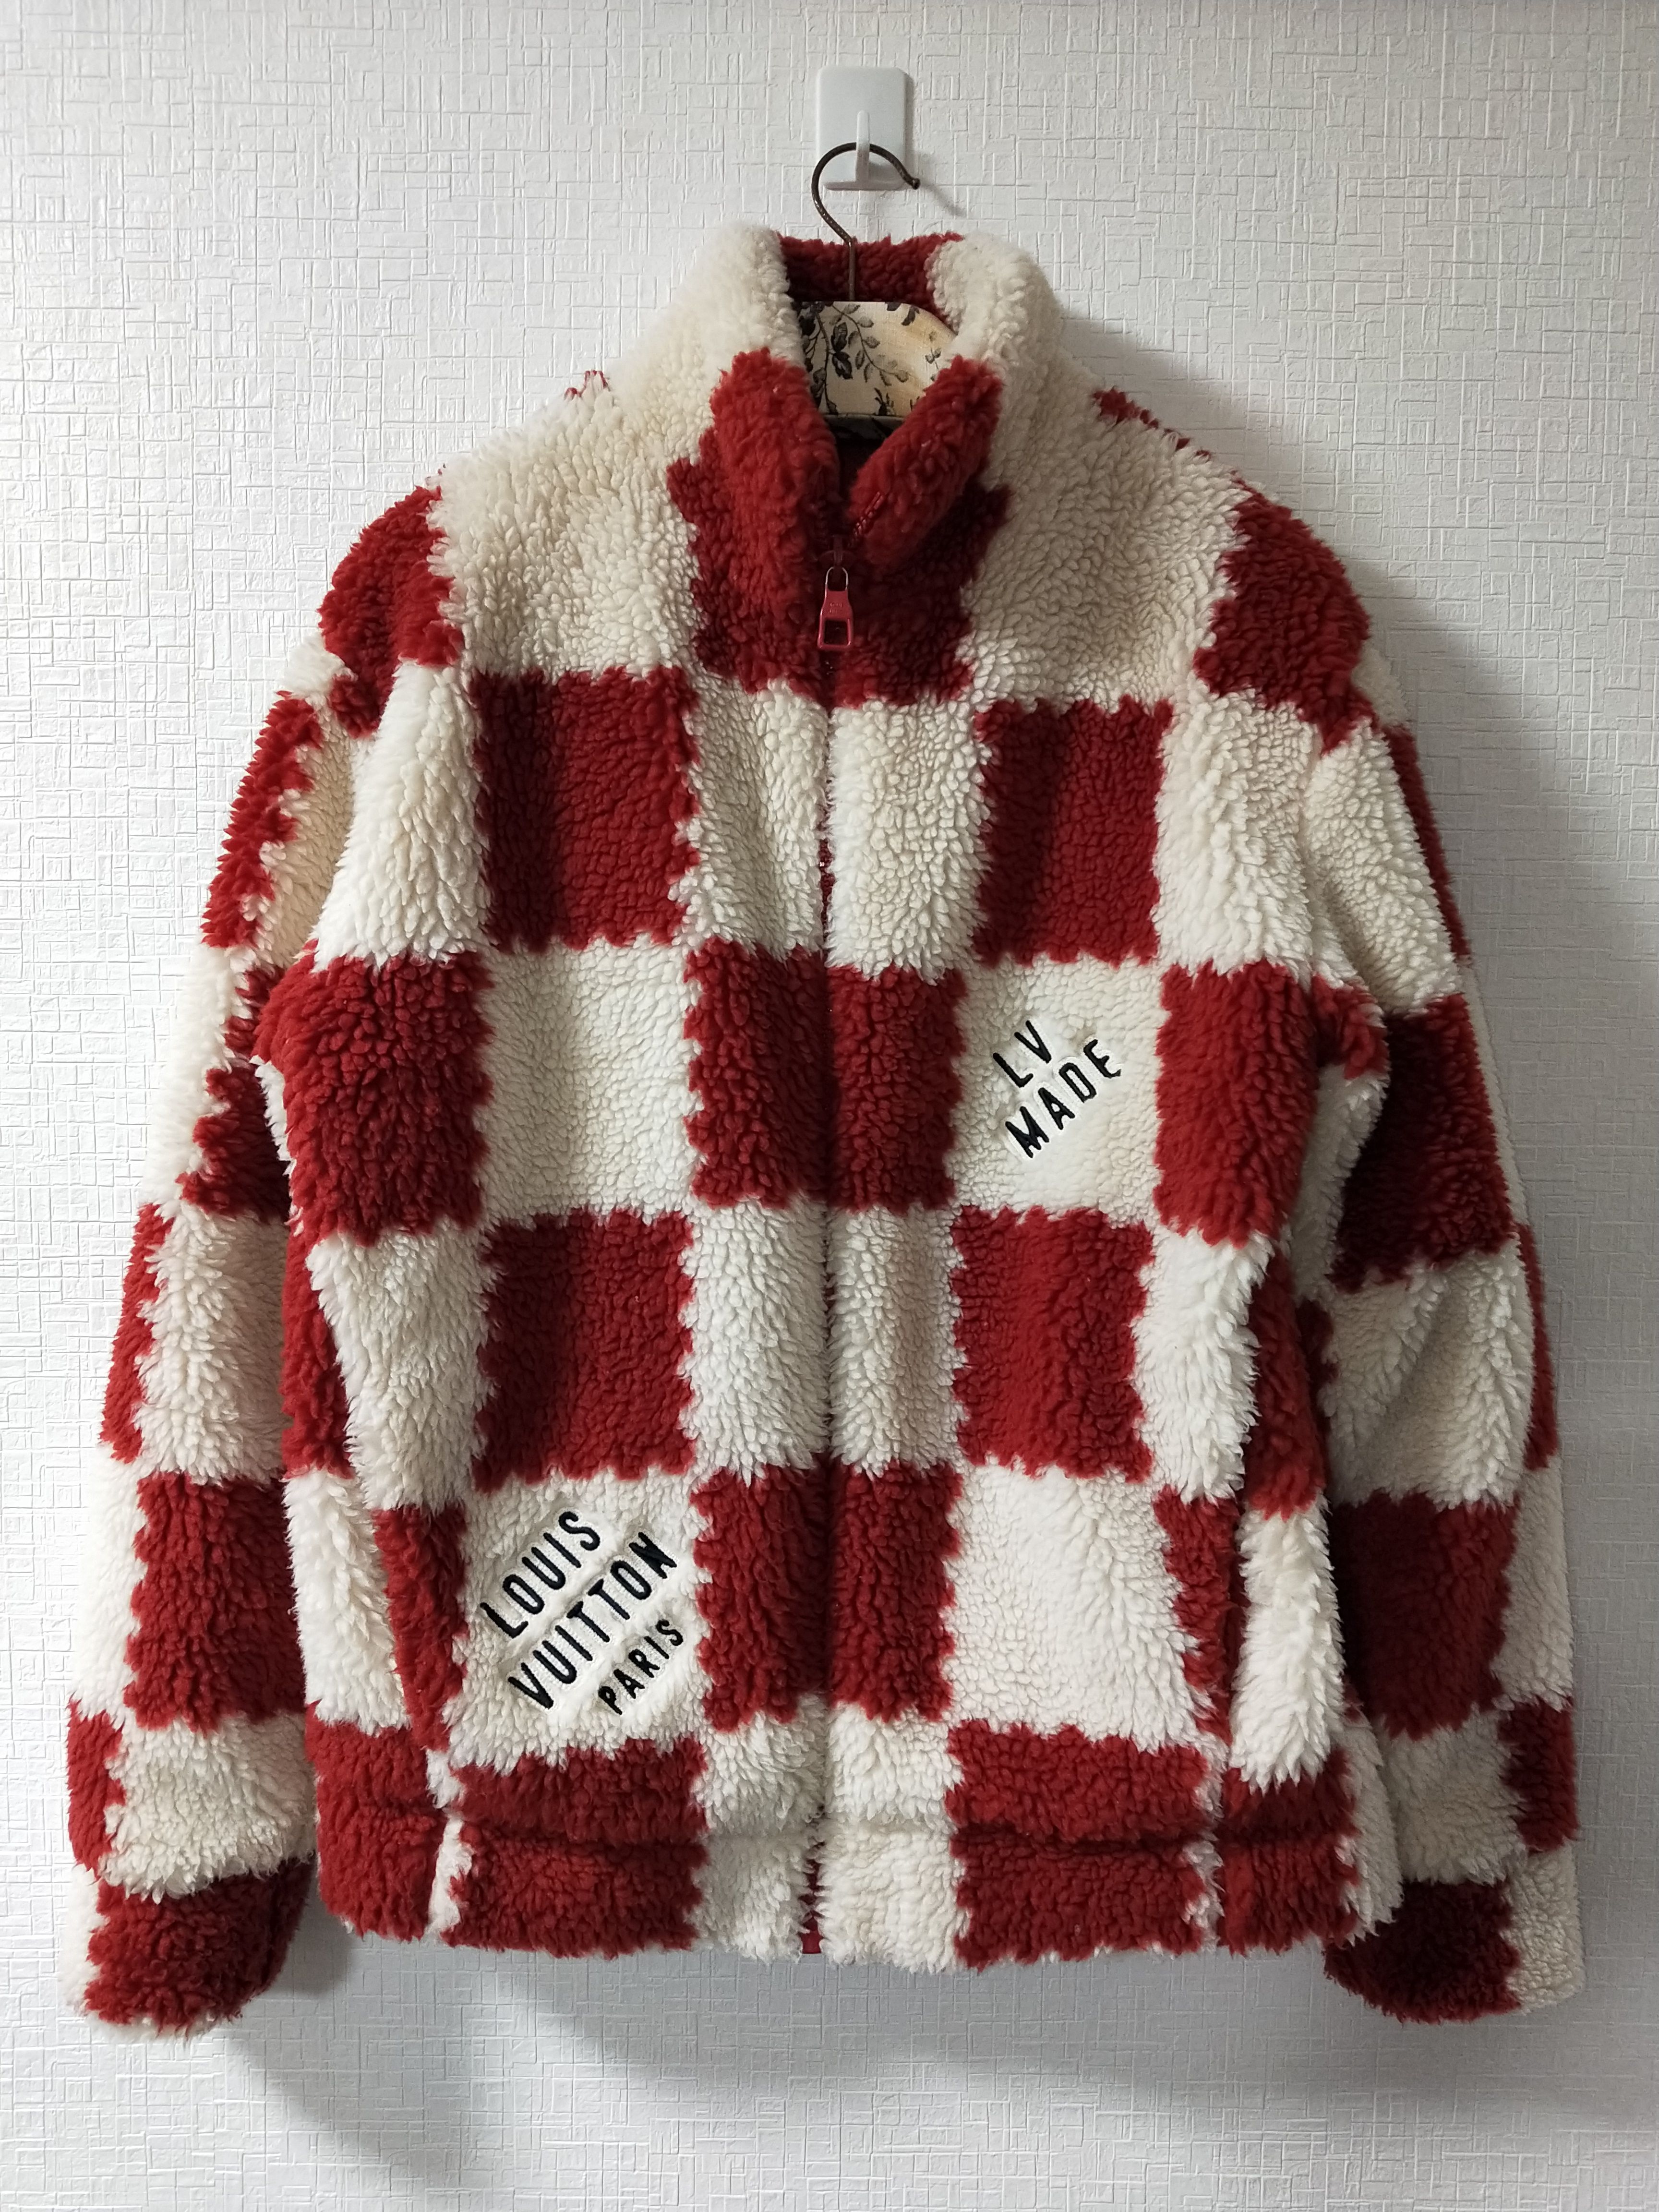 Louis Vuitton Men's Damier Fleece Blouson Zip Jacket